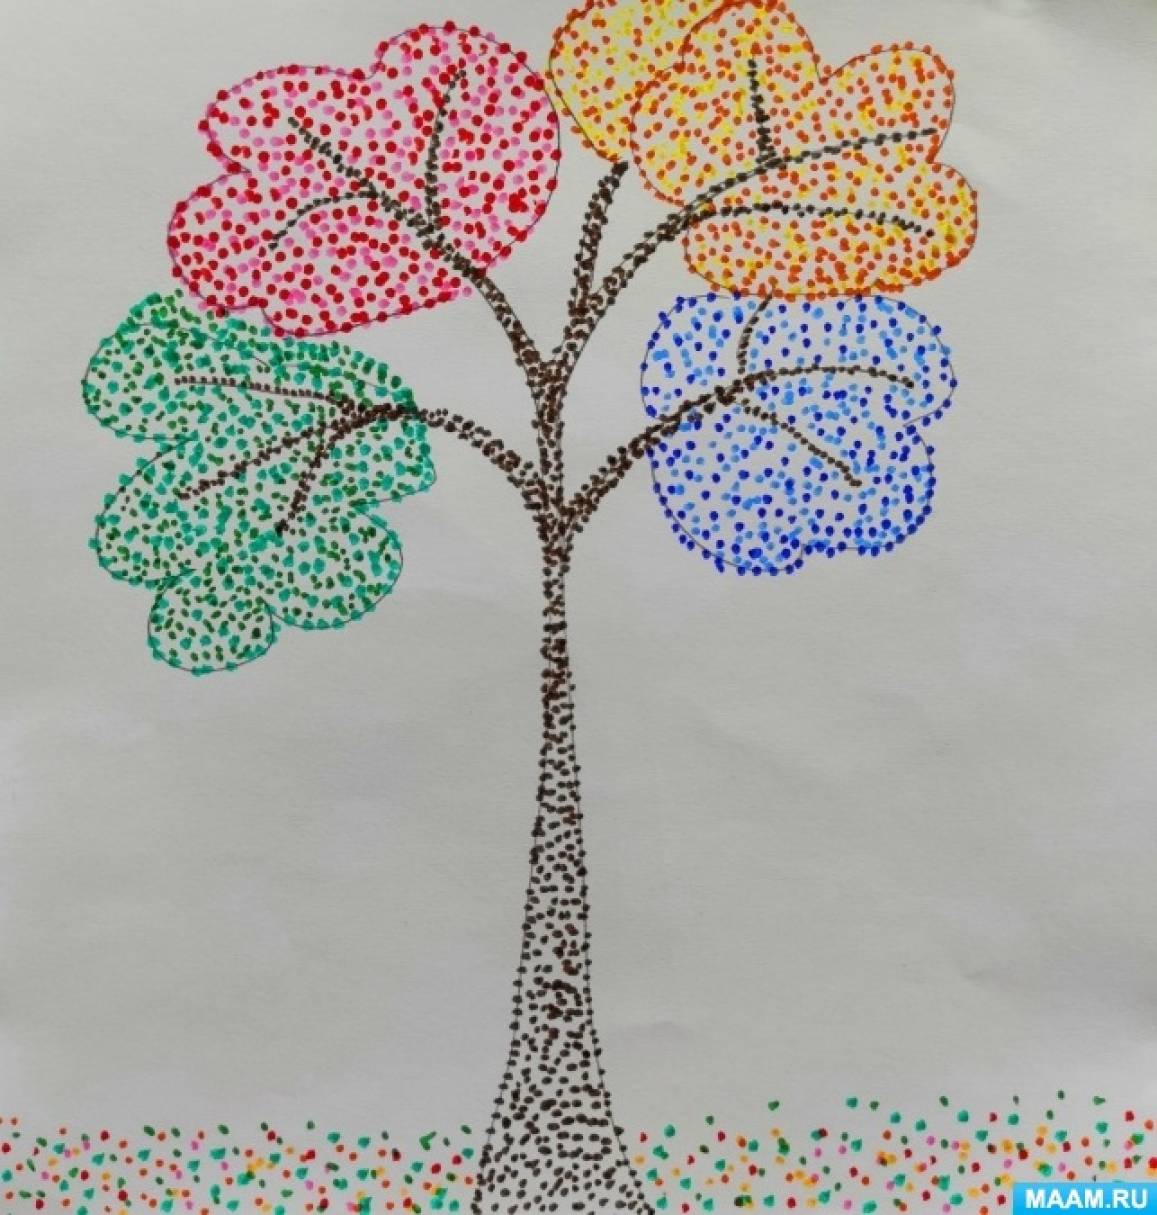 Мастер-класс для детей «Осеннее дерево» в технике нетрадиционного рисования «пуантилизм»